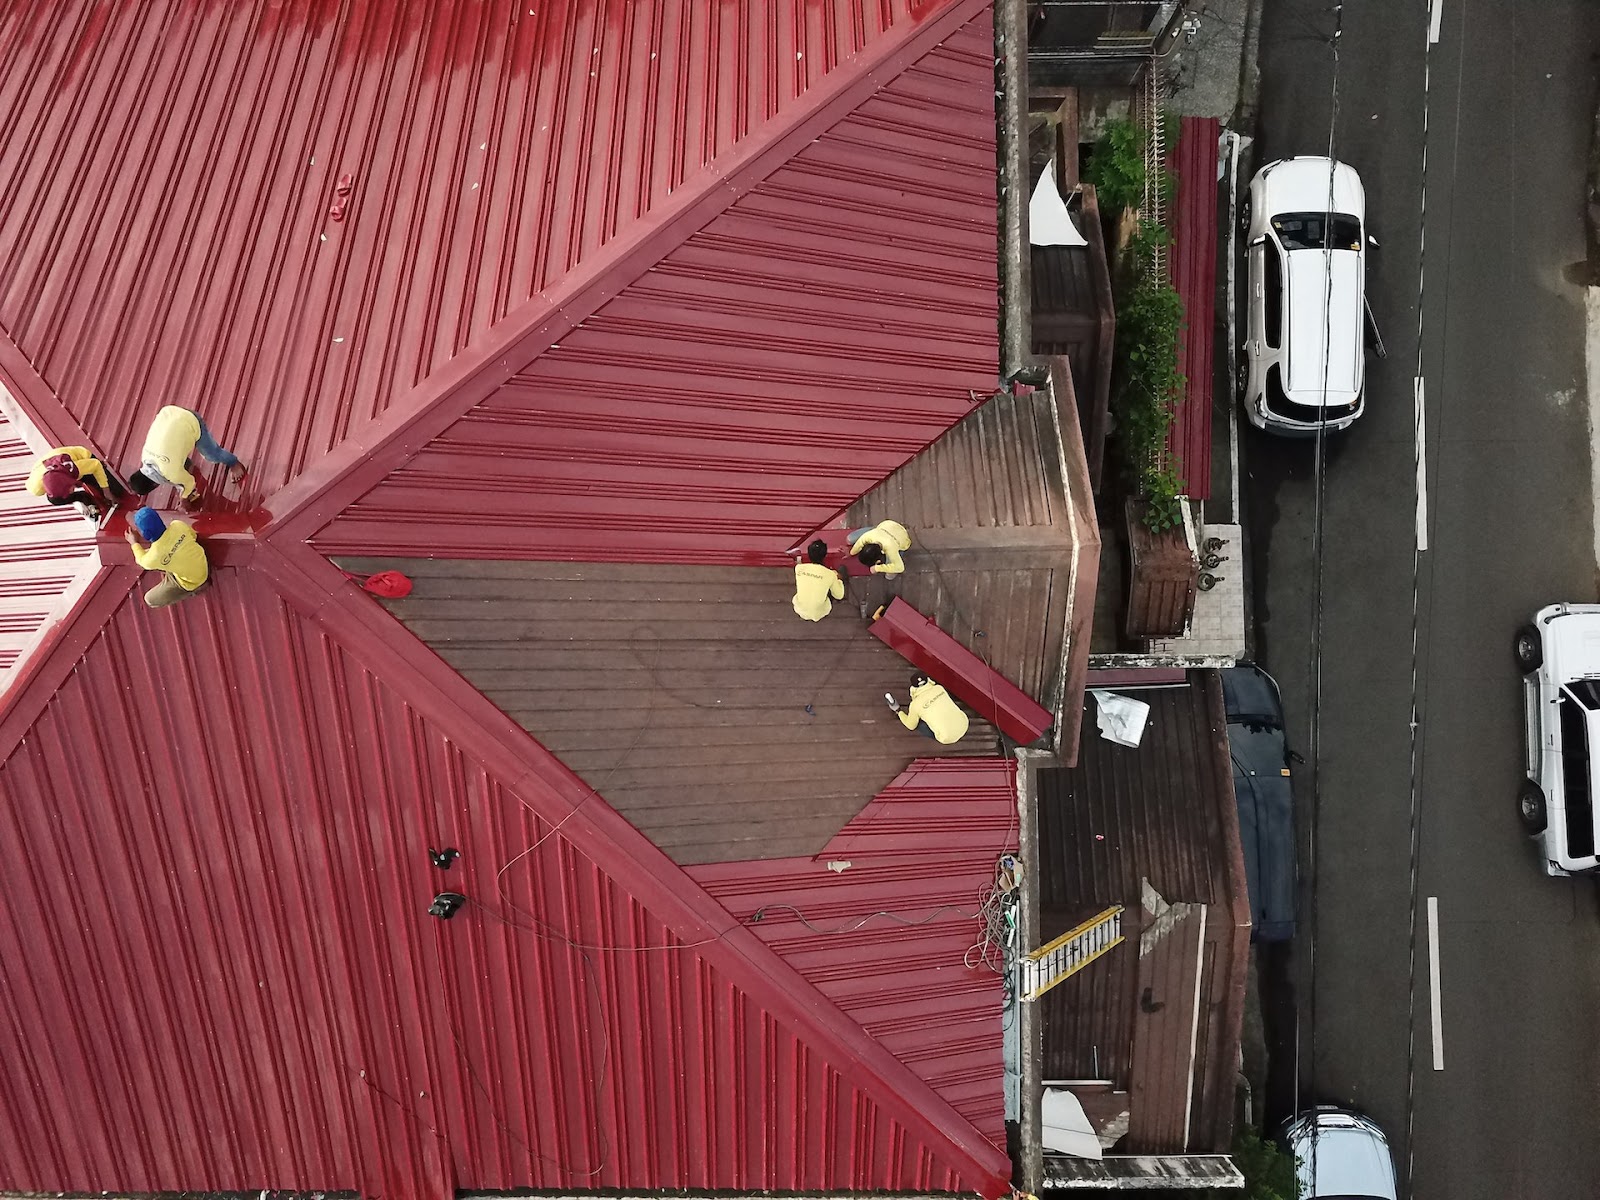 Several people repairing a red metal roof